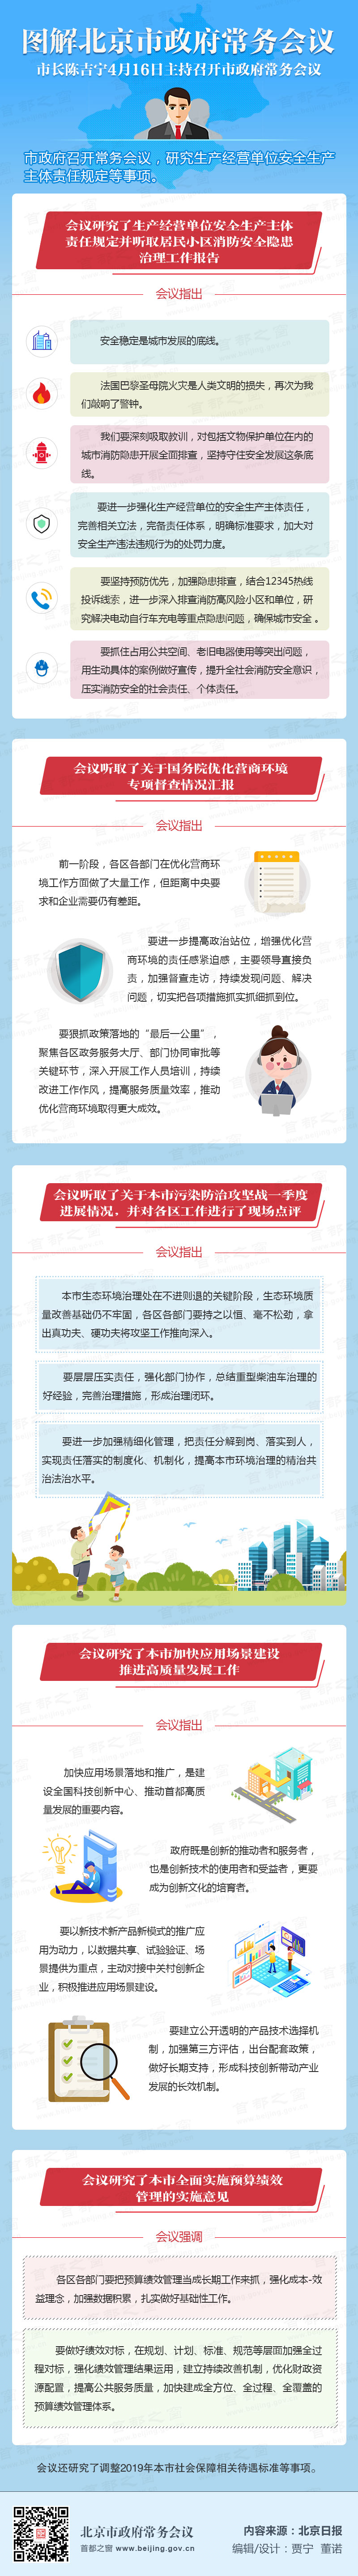 图解2019年4月16日北京市政府常务会议